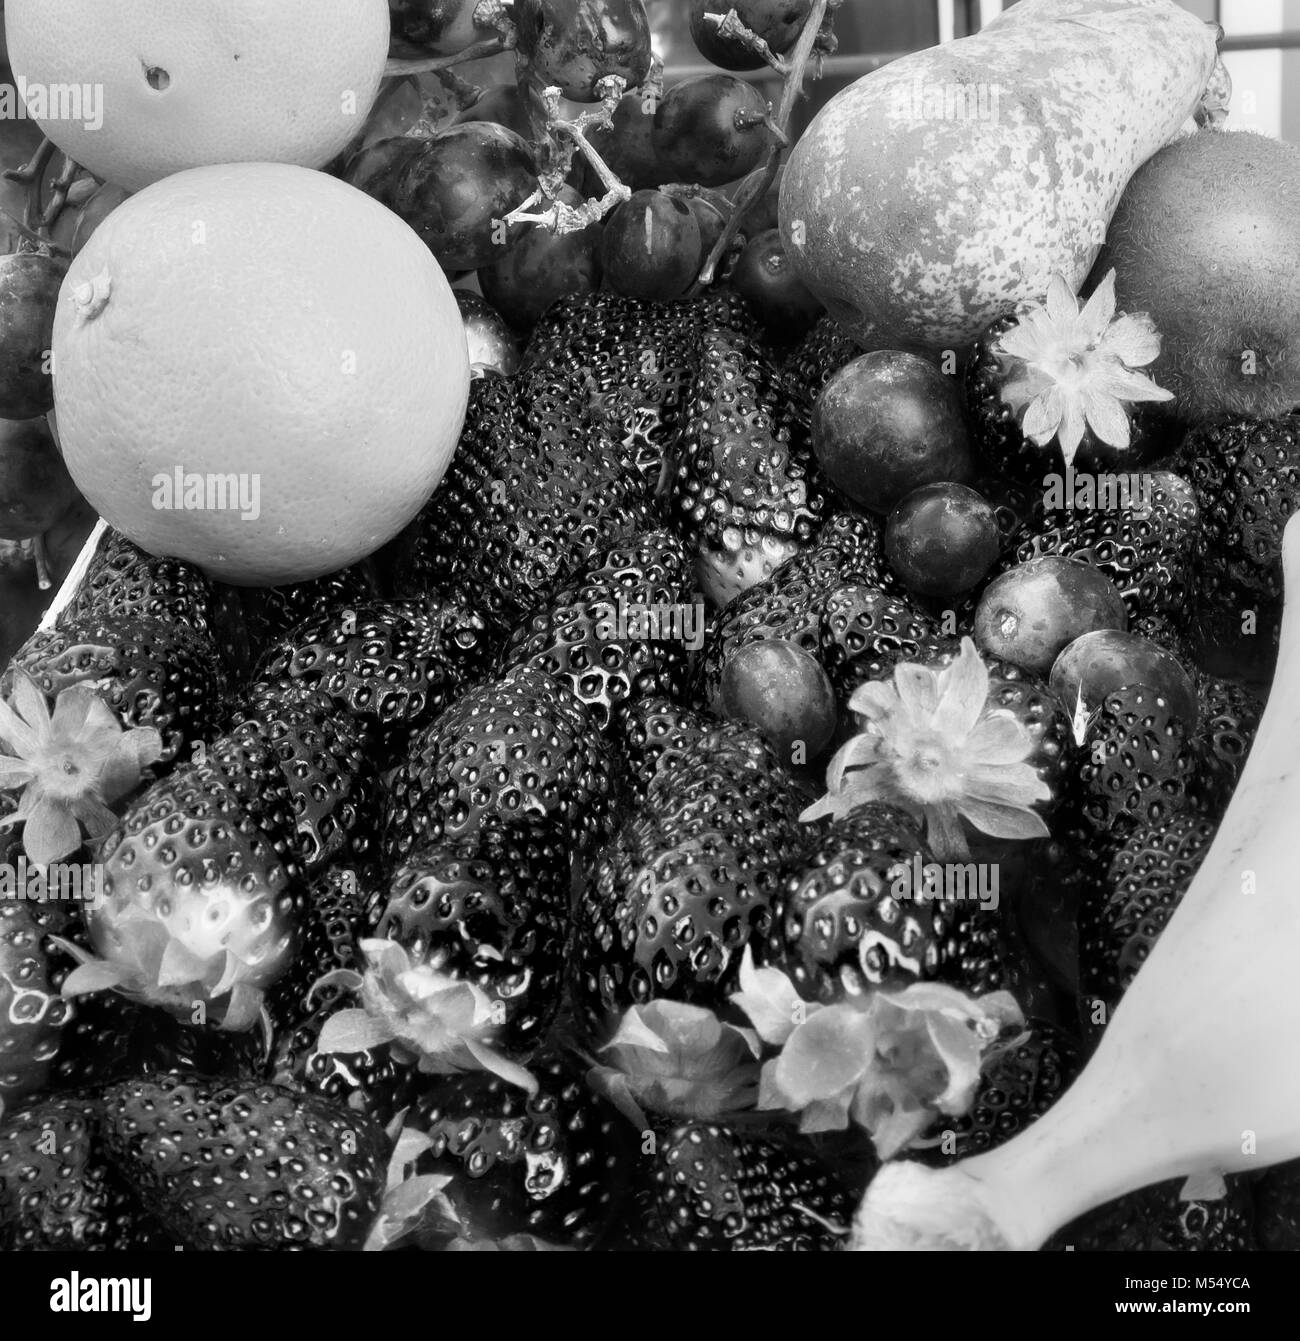 Frutto: fragole Arance Uve kiwi e banana. Foto in bianco e nero Foto Stock